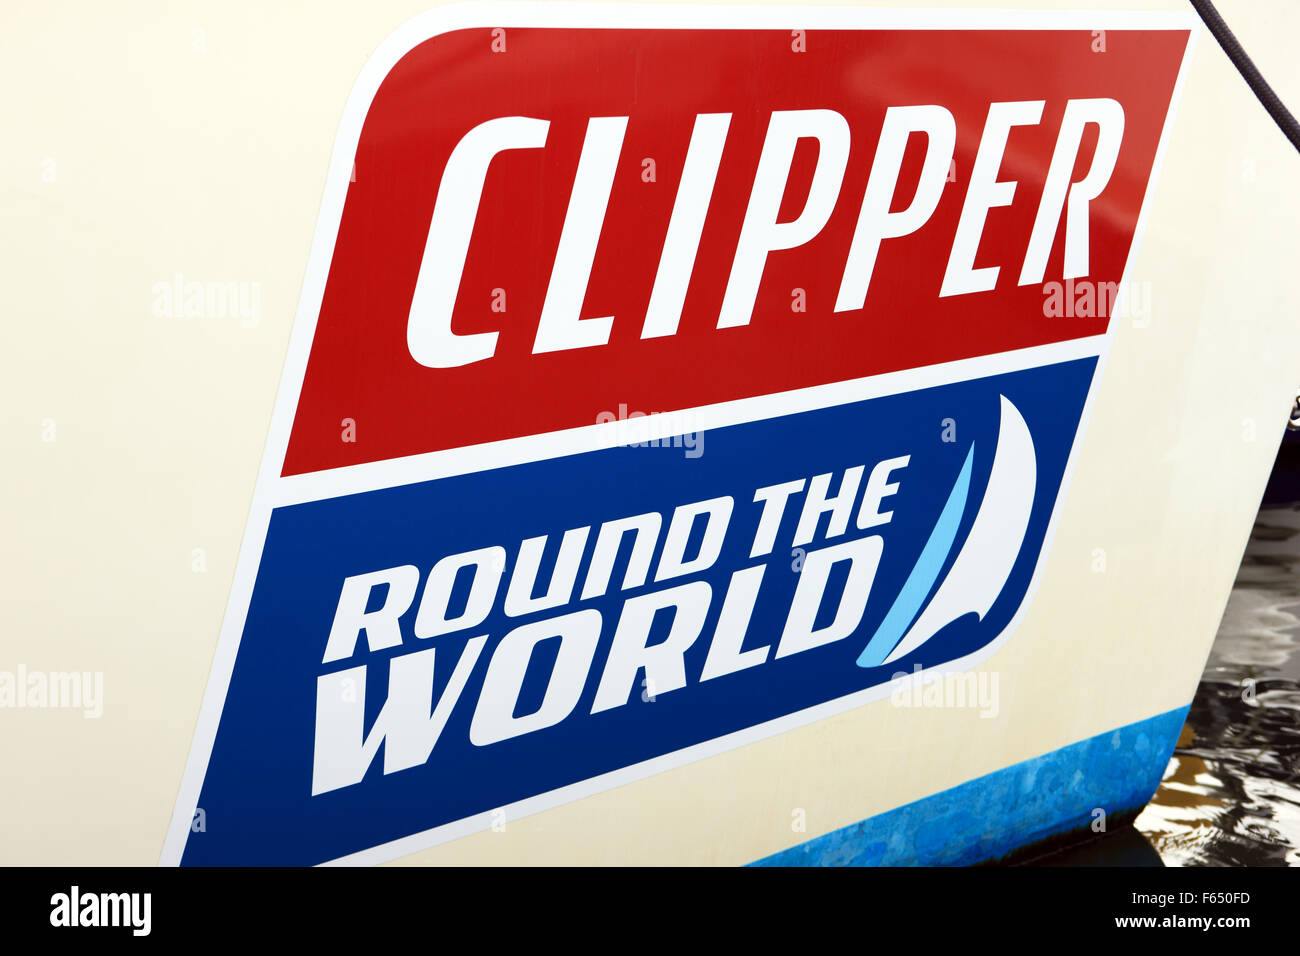 Clipper Round the World Race autocollant sur la proue d'un bateau à voile Banque D'Images